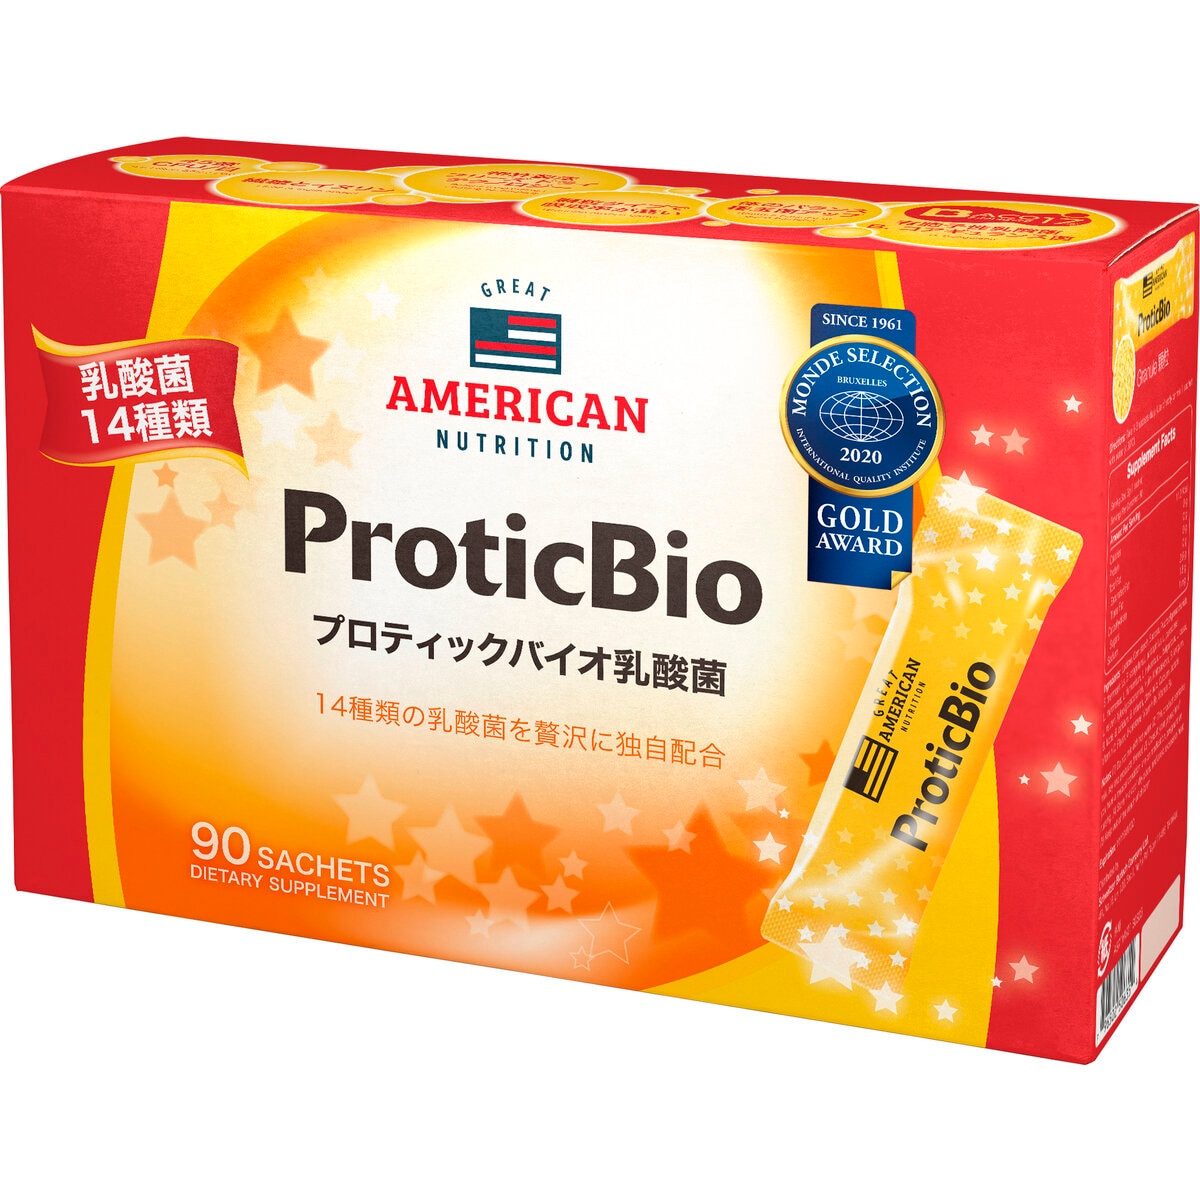 プロティックバイオ乳酸菌 3g スティック x 90 包